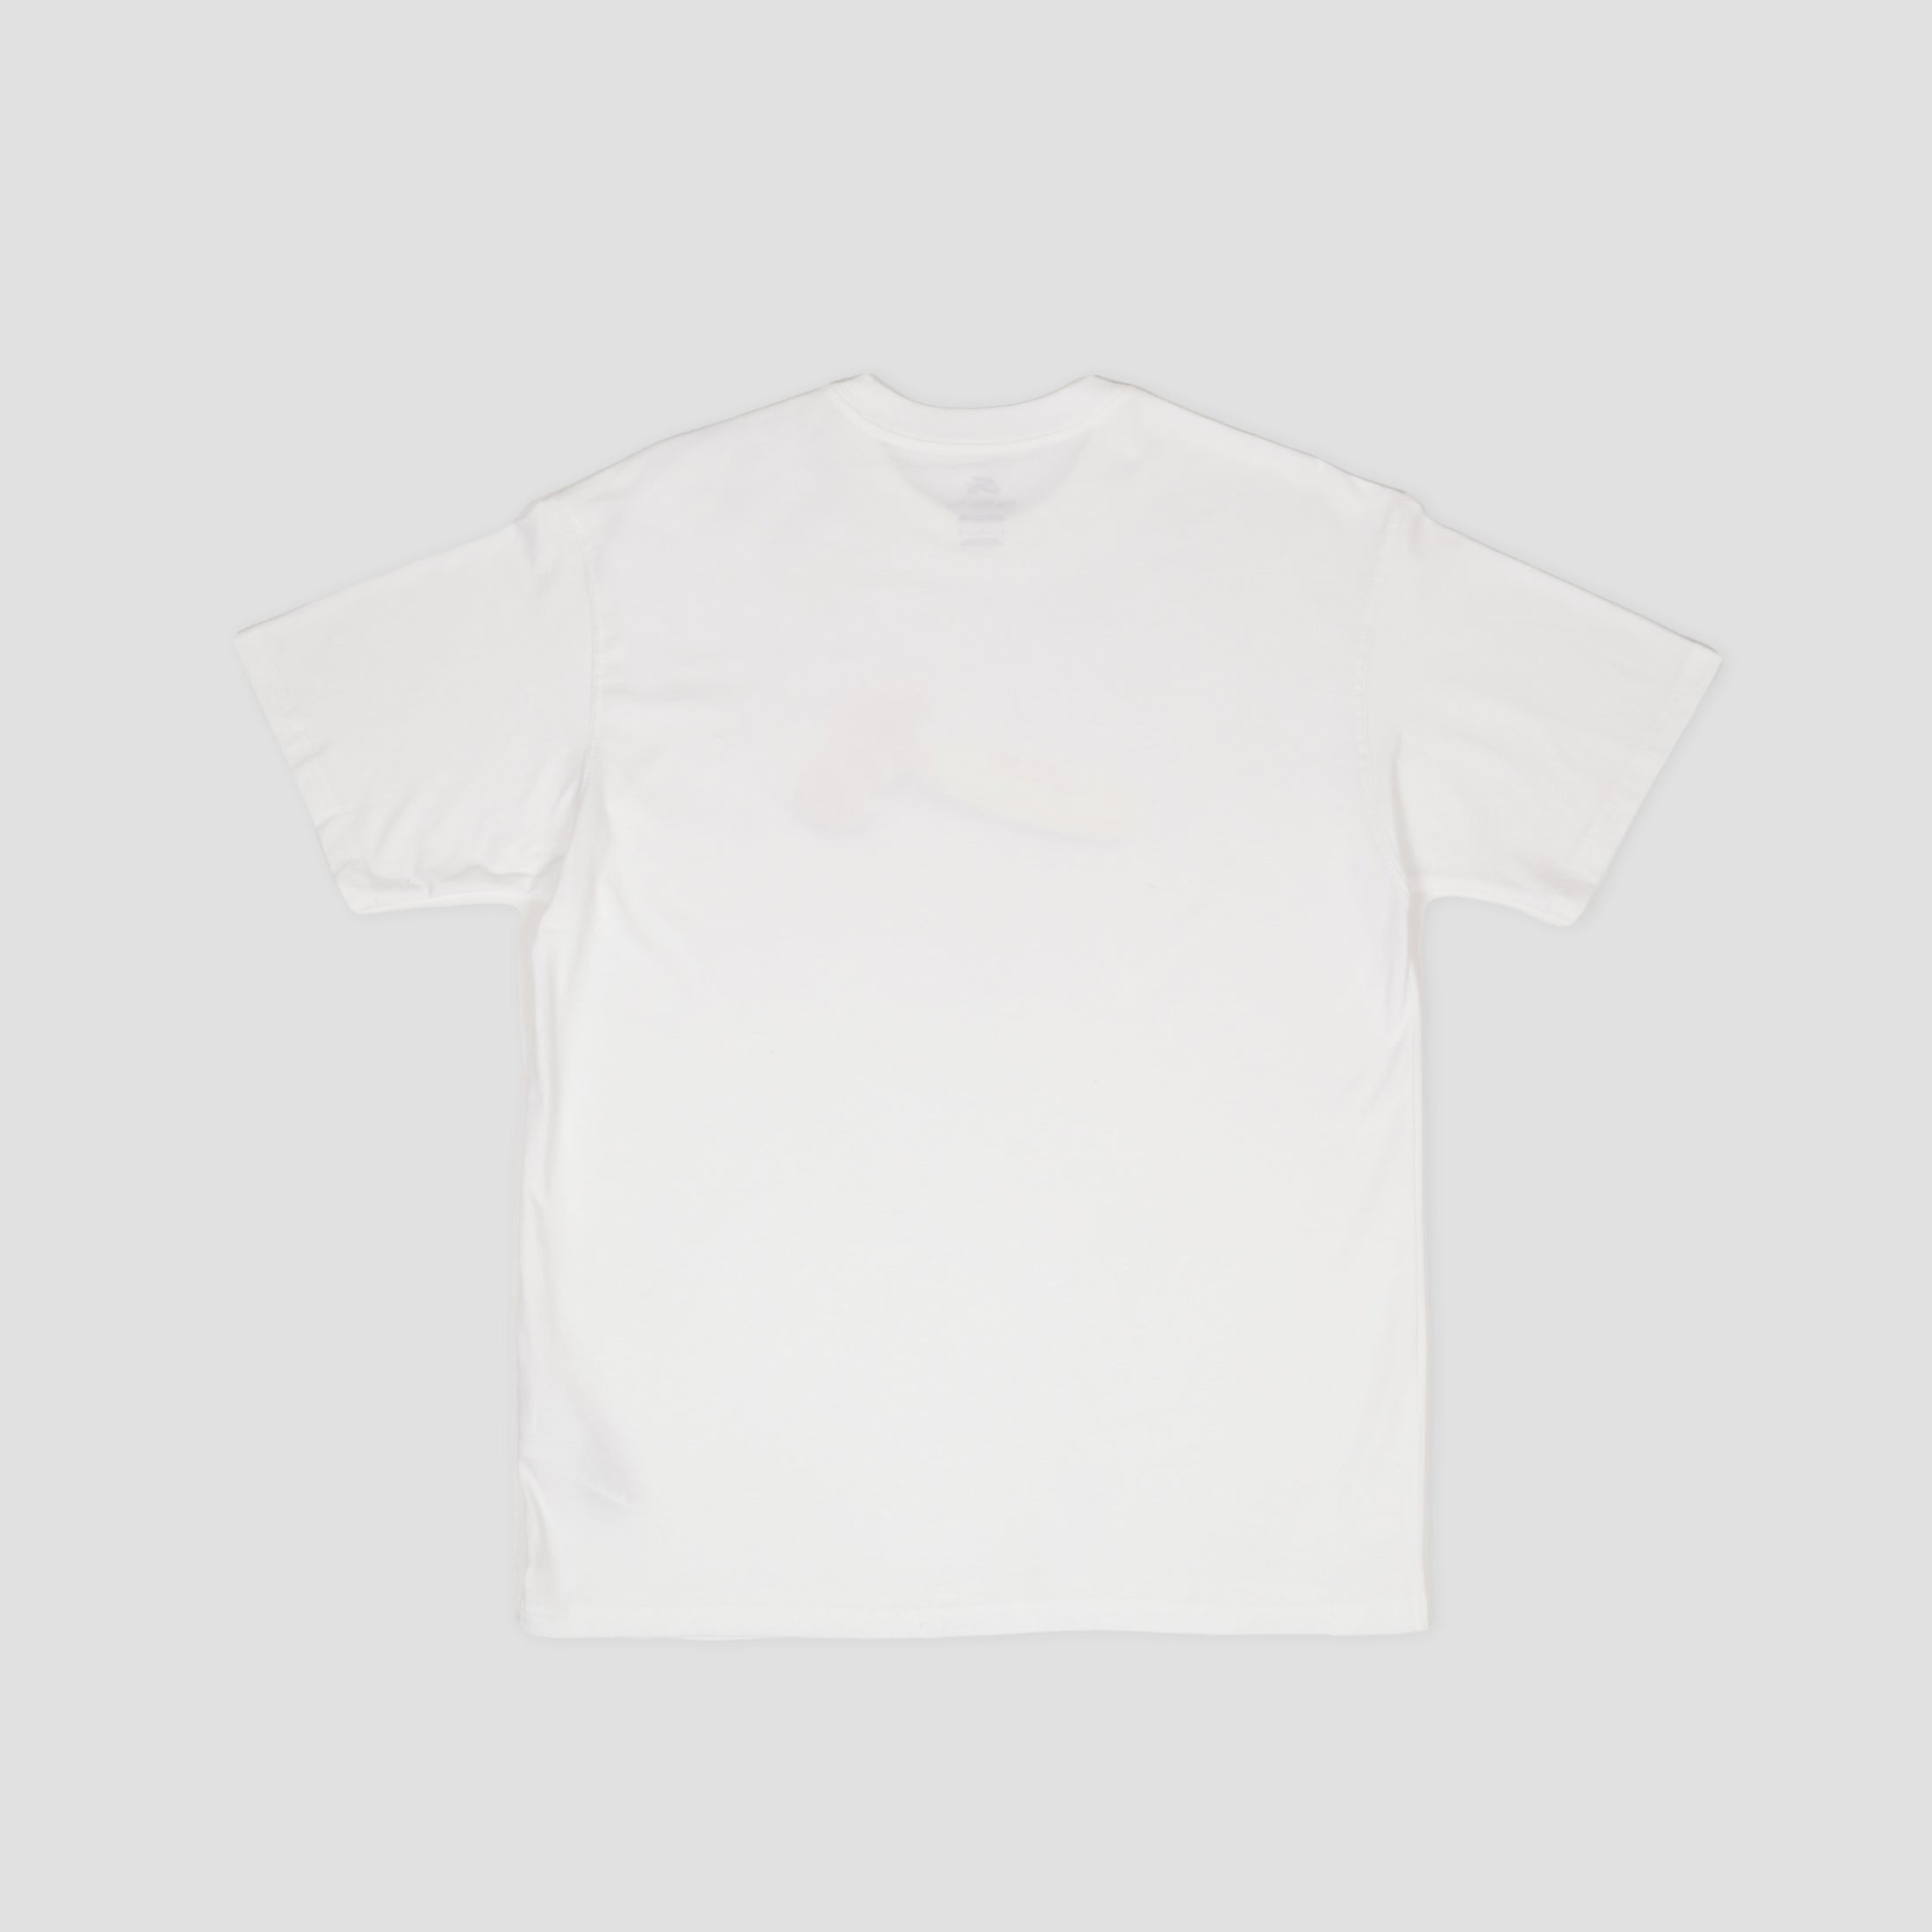 Nike SB Toy Hammer T-Shirt White